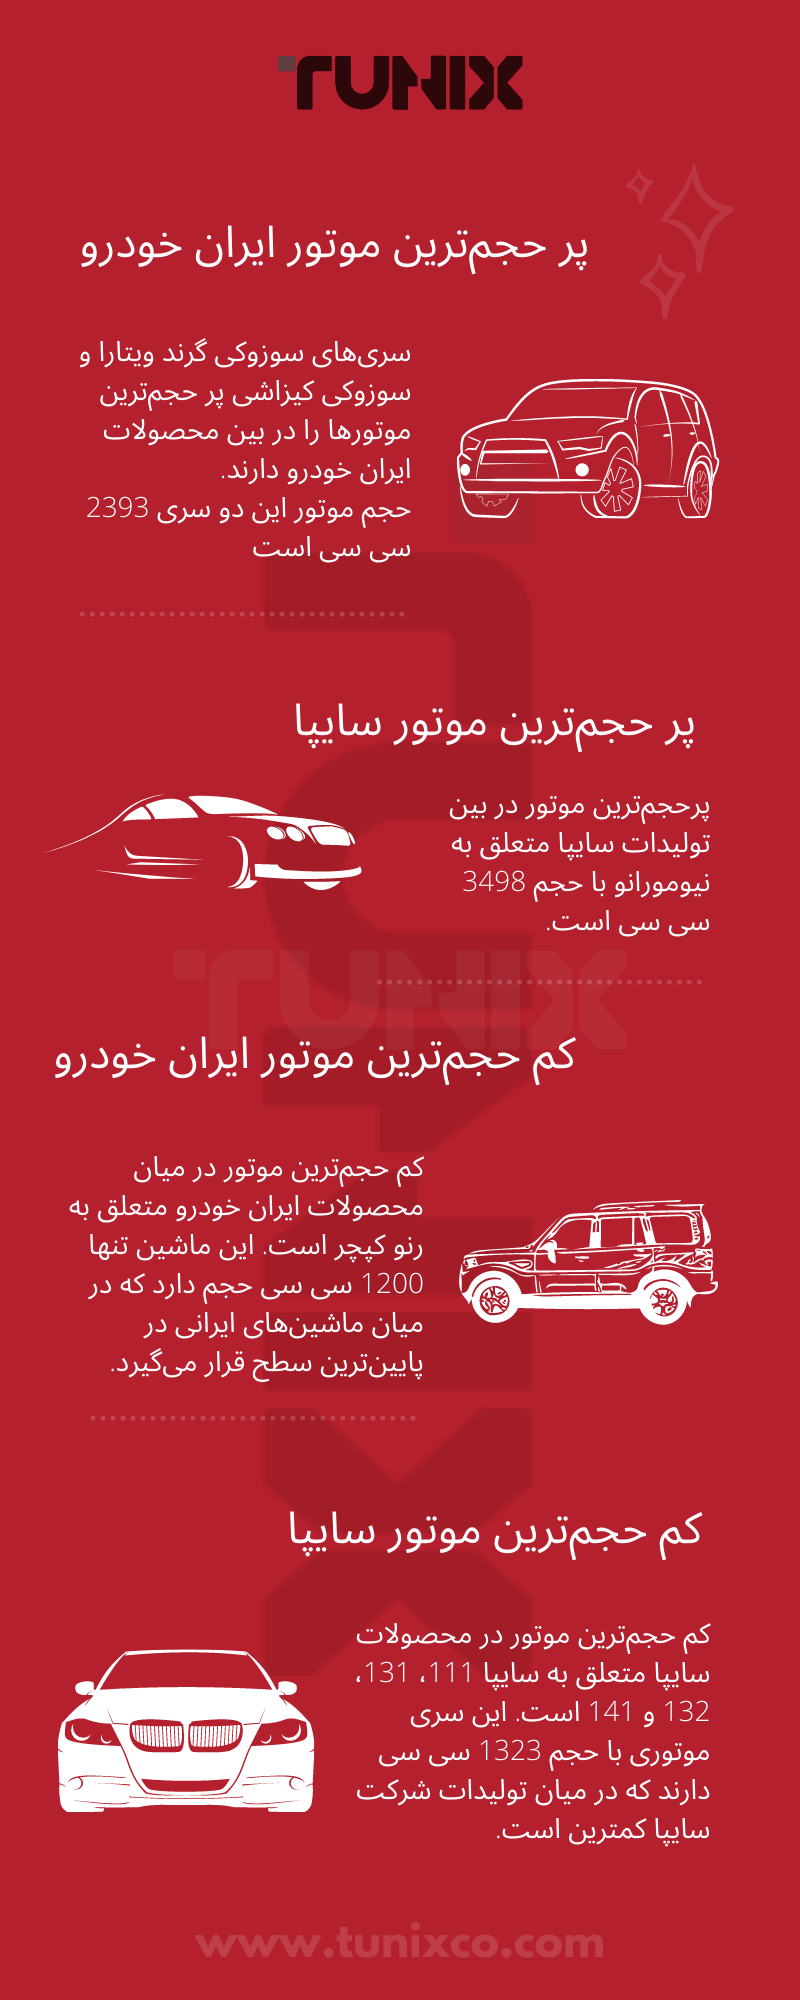 اینفوگرافی از وضعیت حجم موتورهای ایرانی.